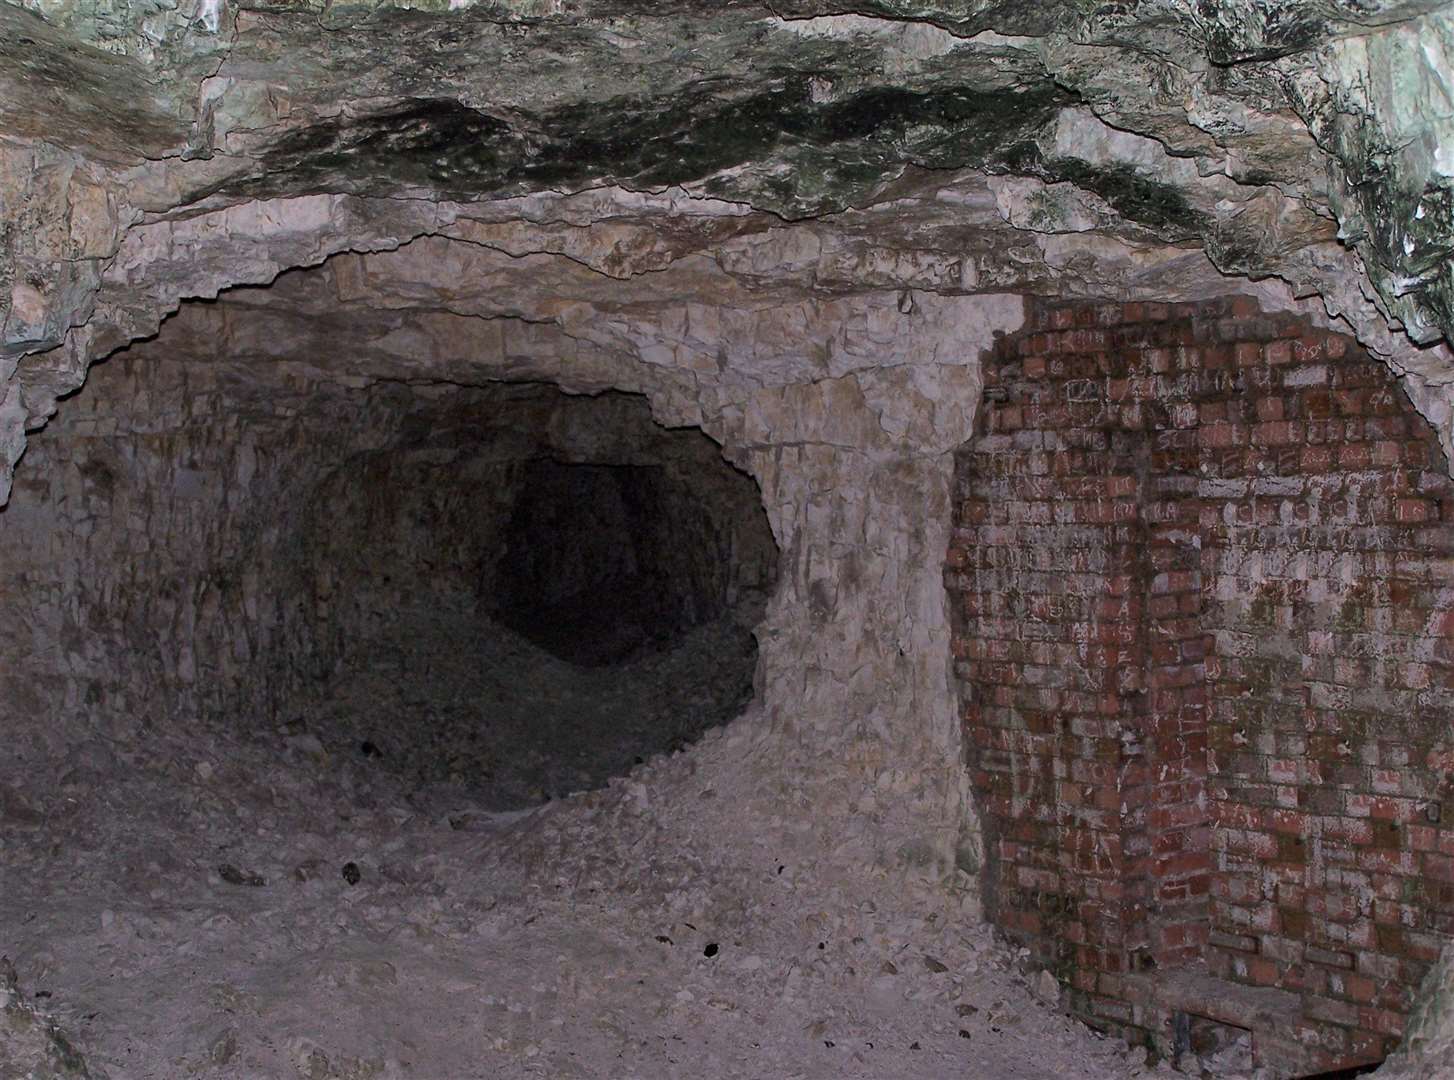 Underground in the chalk mines